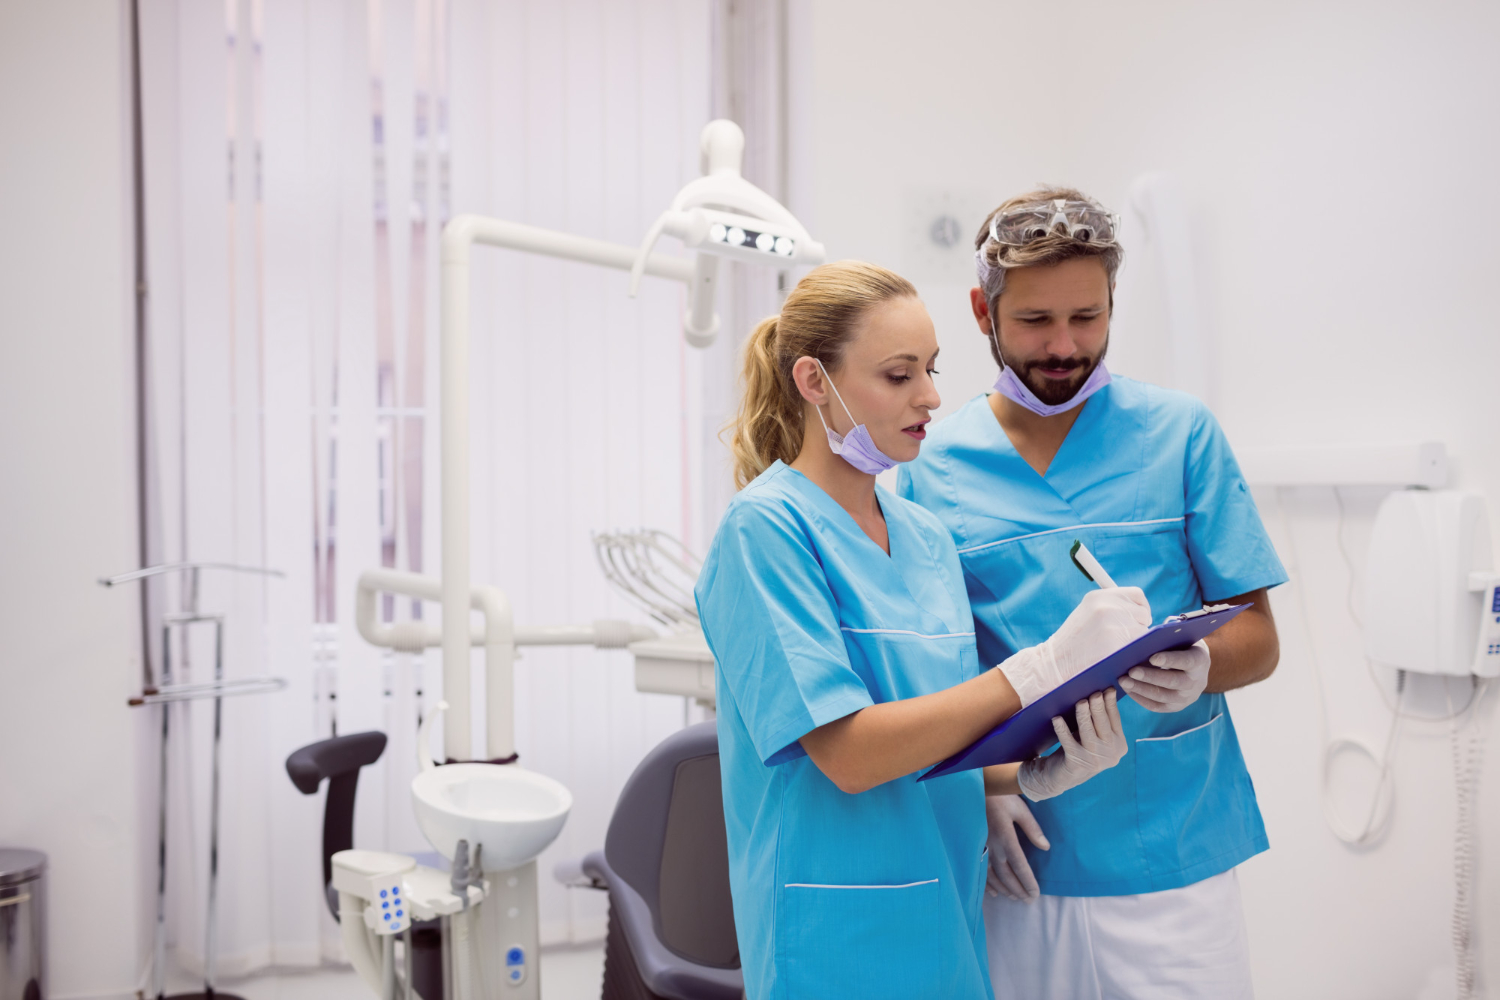 Aufgaben delegieren als Zahnarzt: Kontrolle ist gut, Vertrauen ist besser